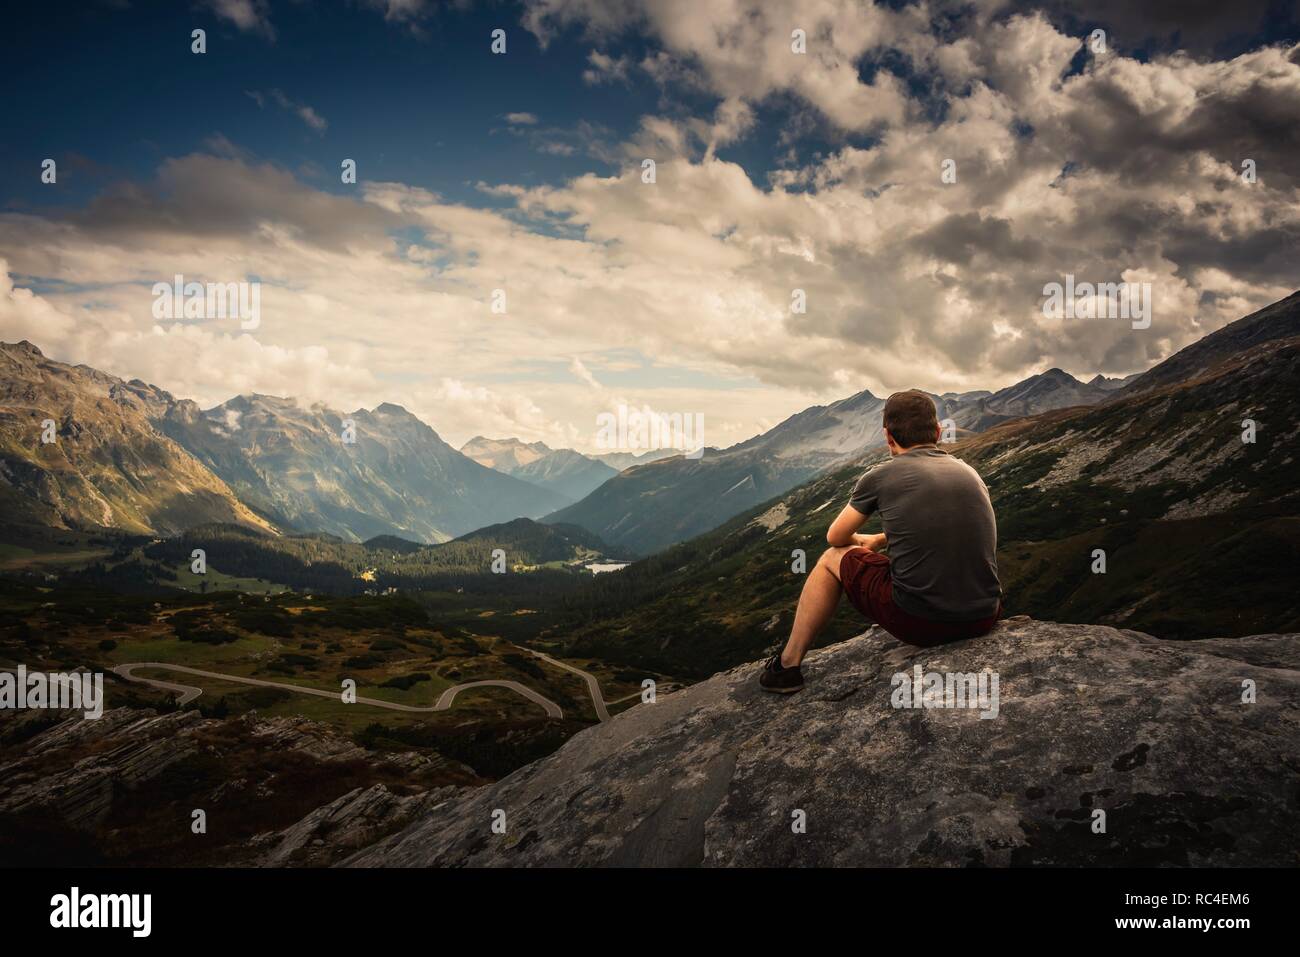 Man sat admiring the view of San Bernadino pass, Switzerland Stock Photo